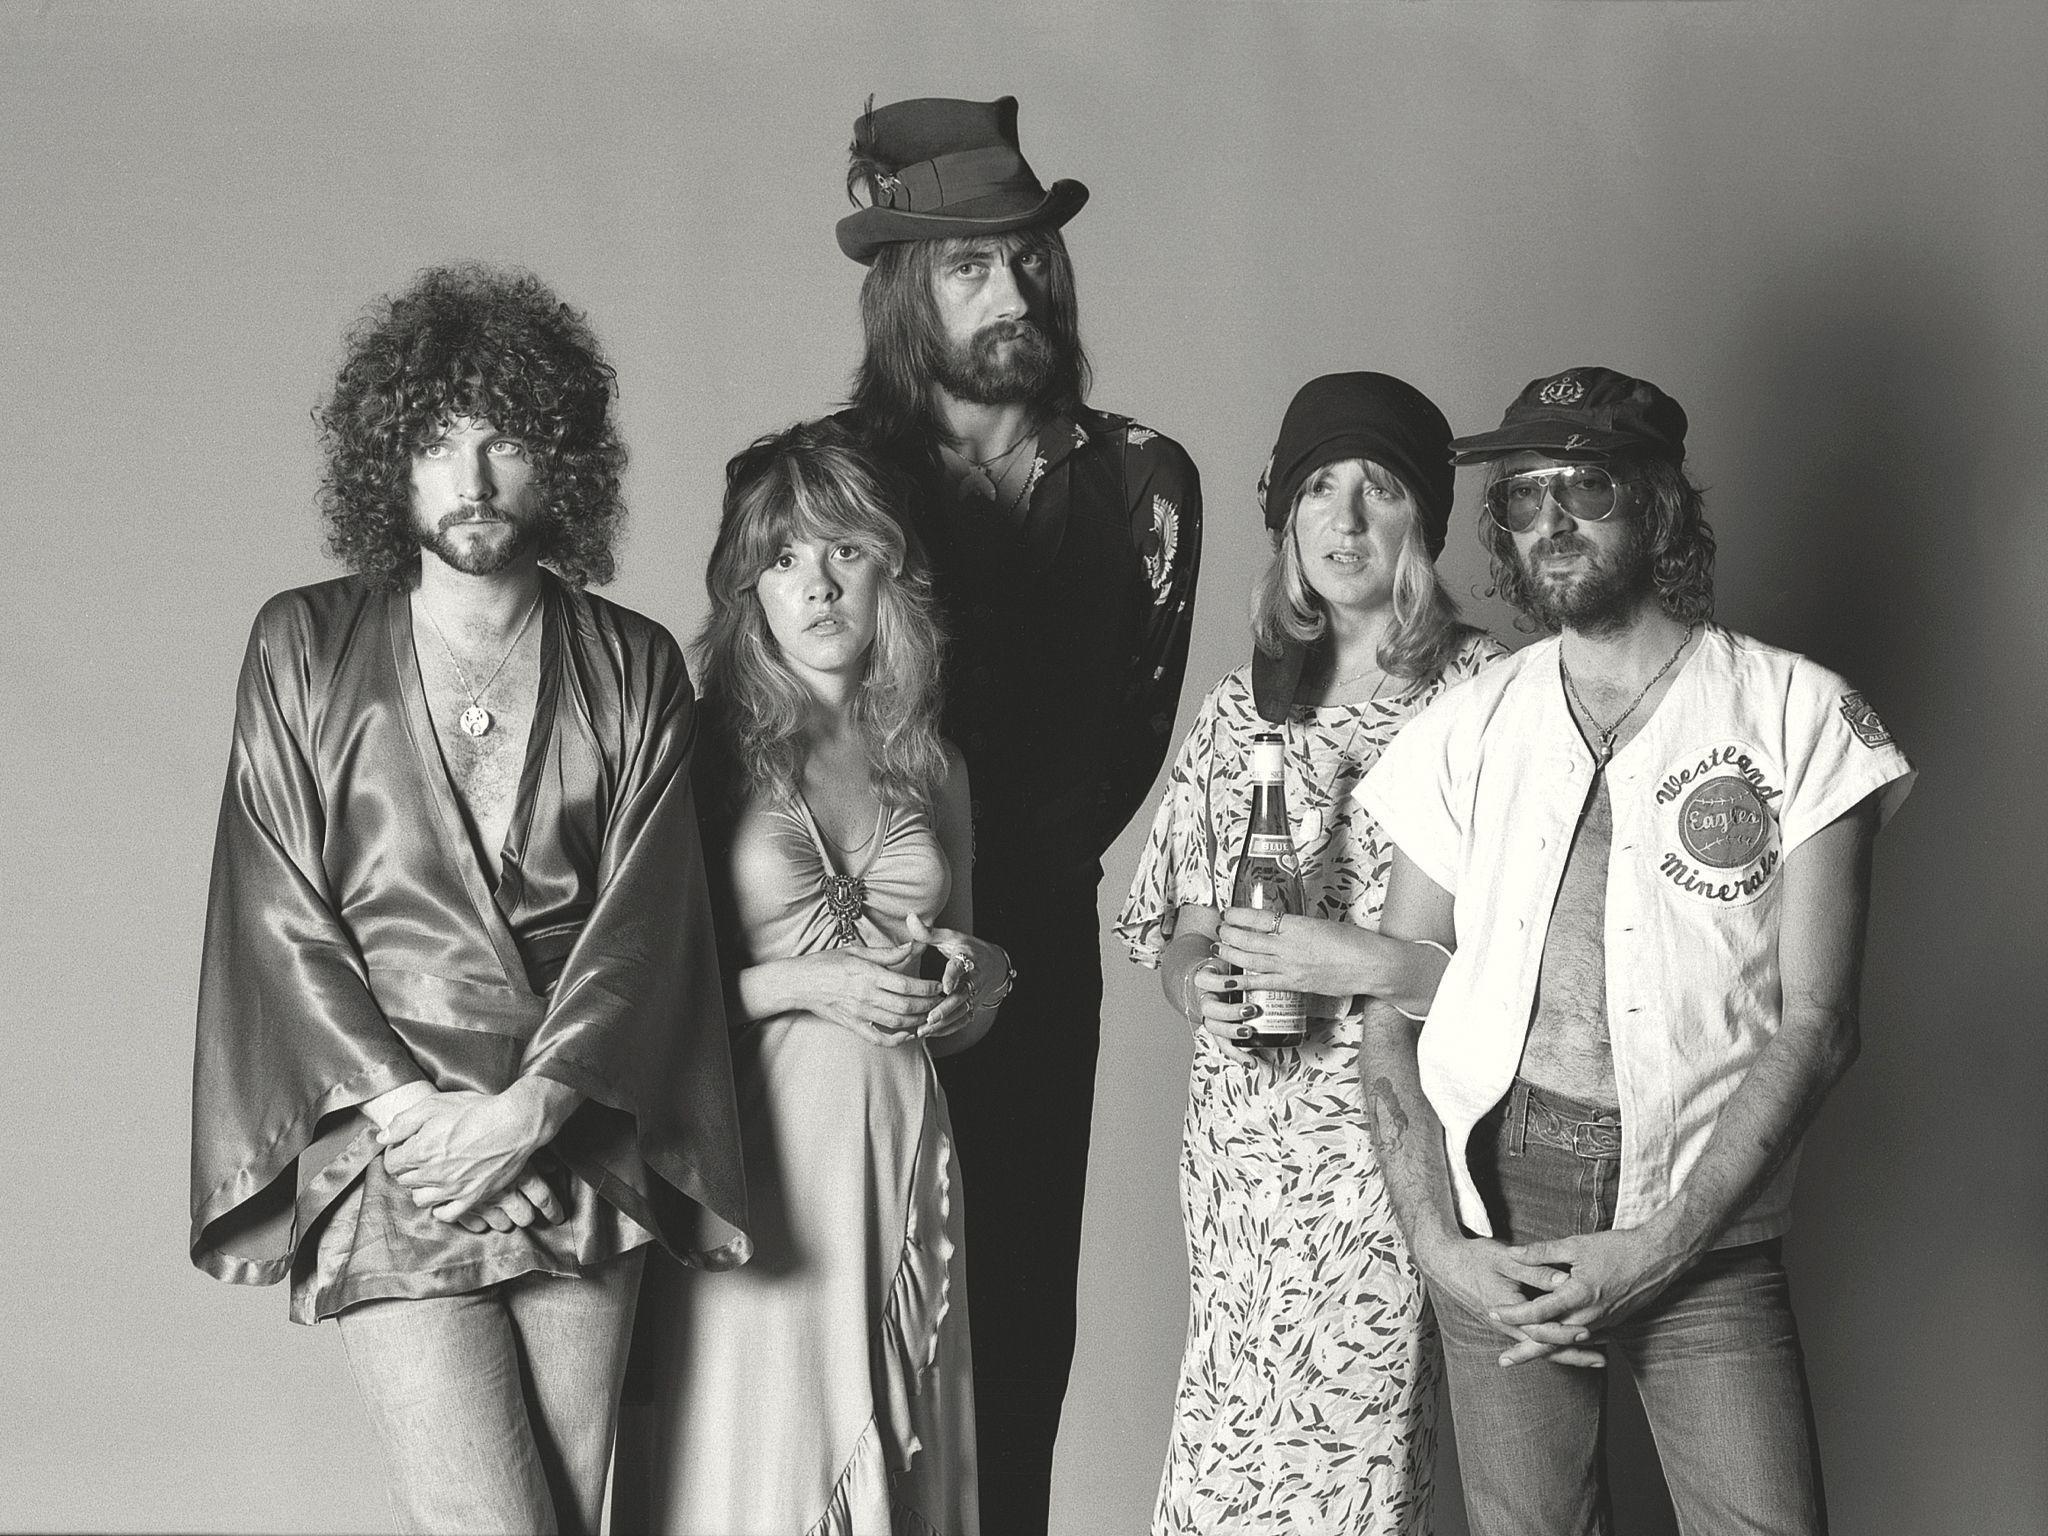 Fleetwood Mac Band Fondos de pantalla Imágenes por Darrin22  Imágenes  españoles imágenes